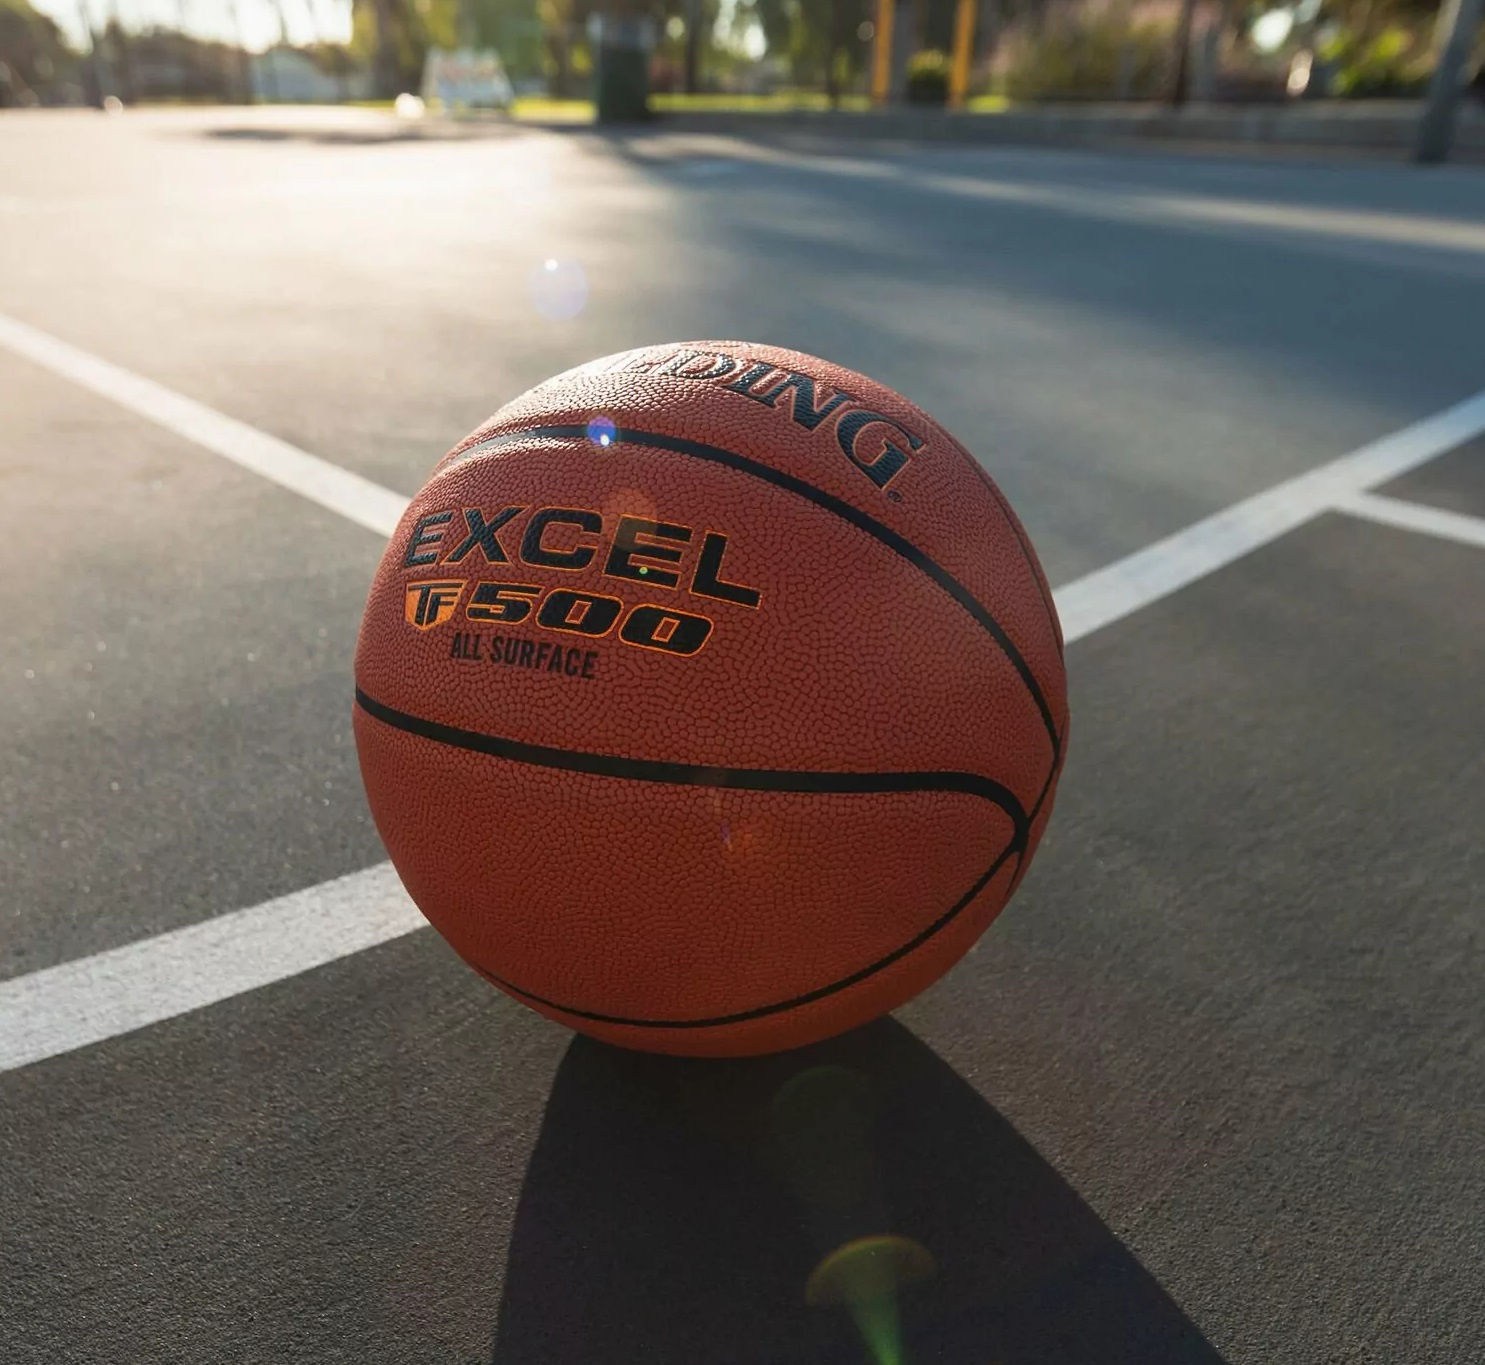 Баскетбольный мяч Spalding Excel TF500 размер 6